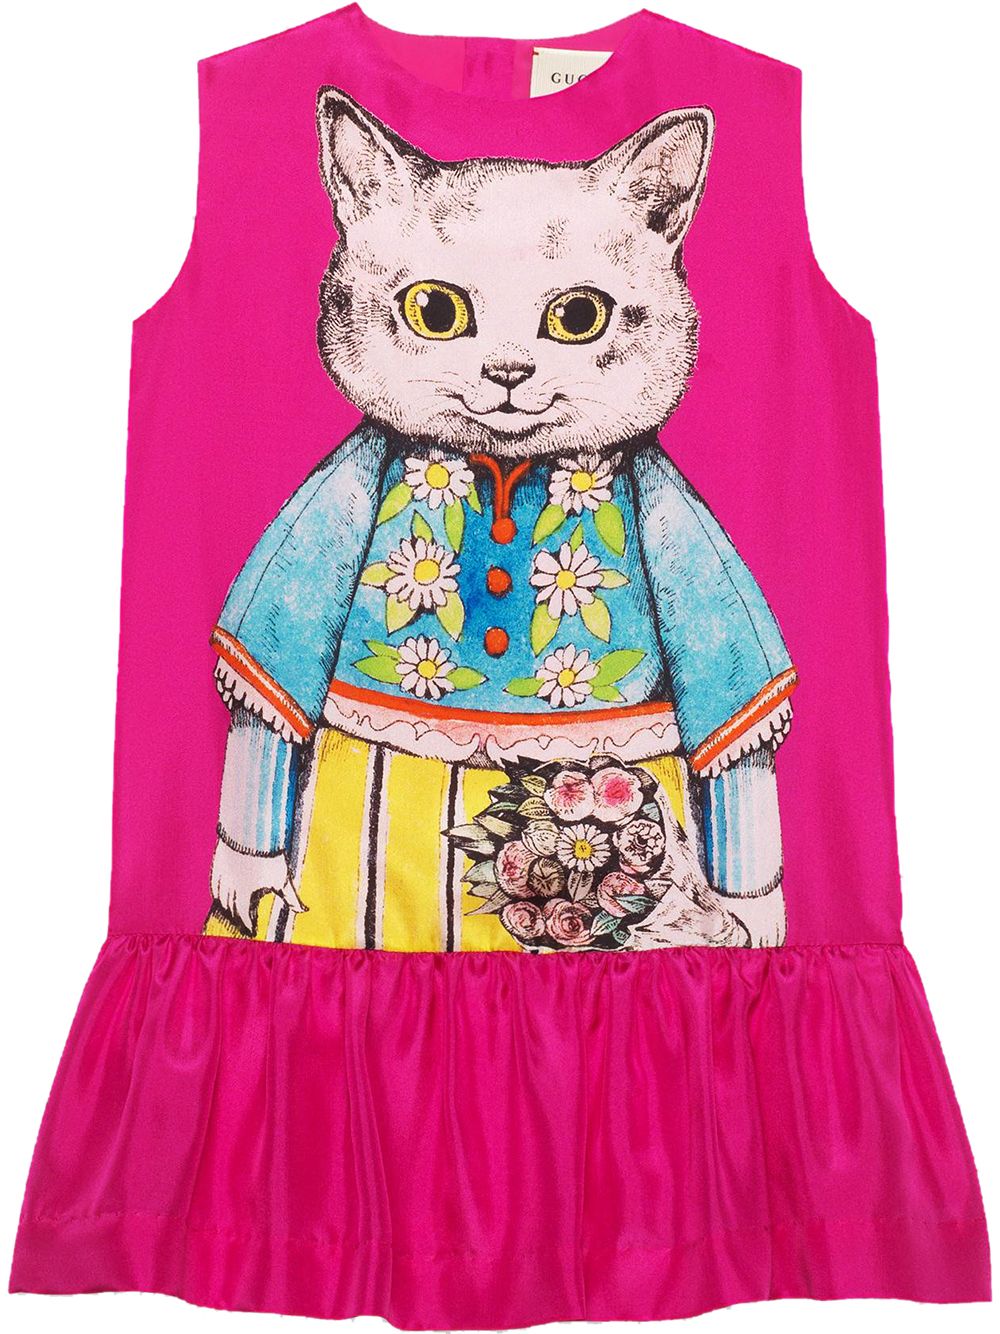 Gucci Kids' Children's Silk Dress With Kitten Print In Pink